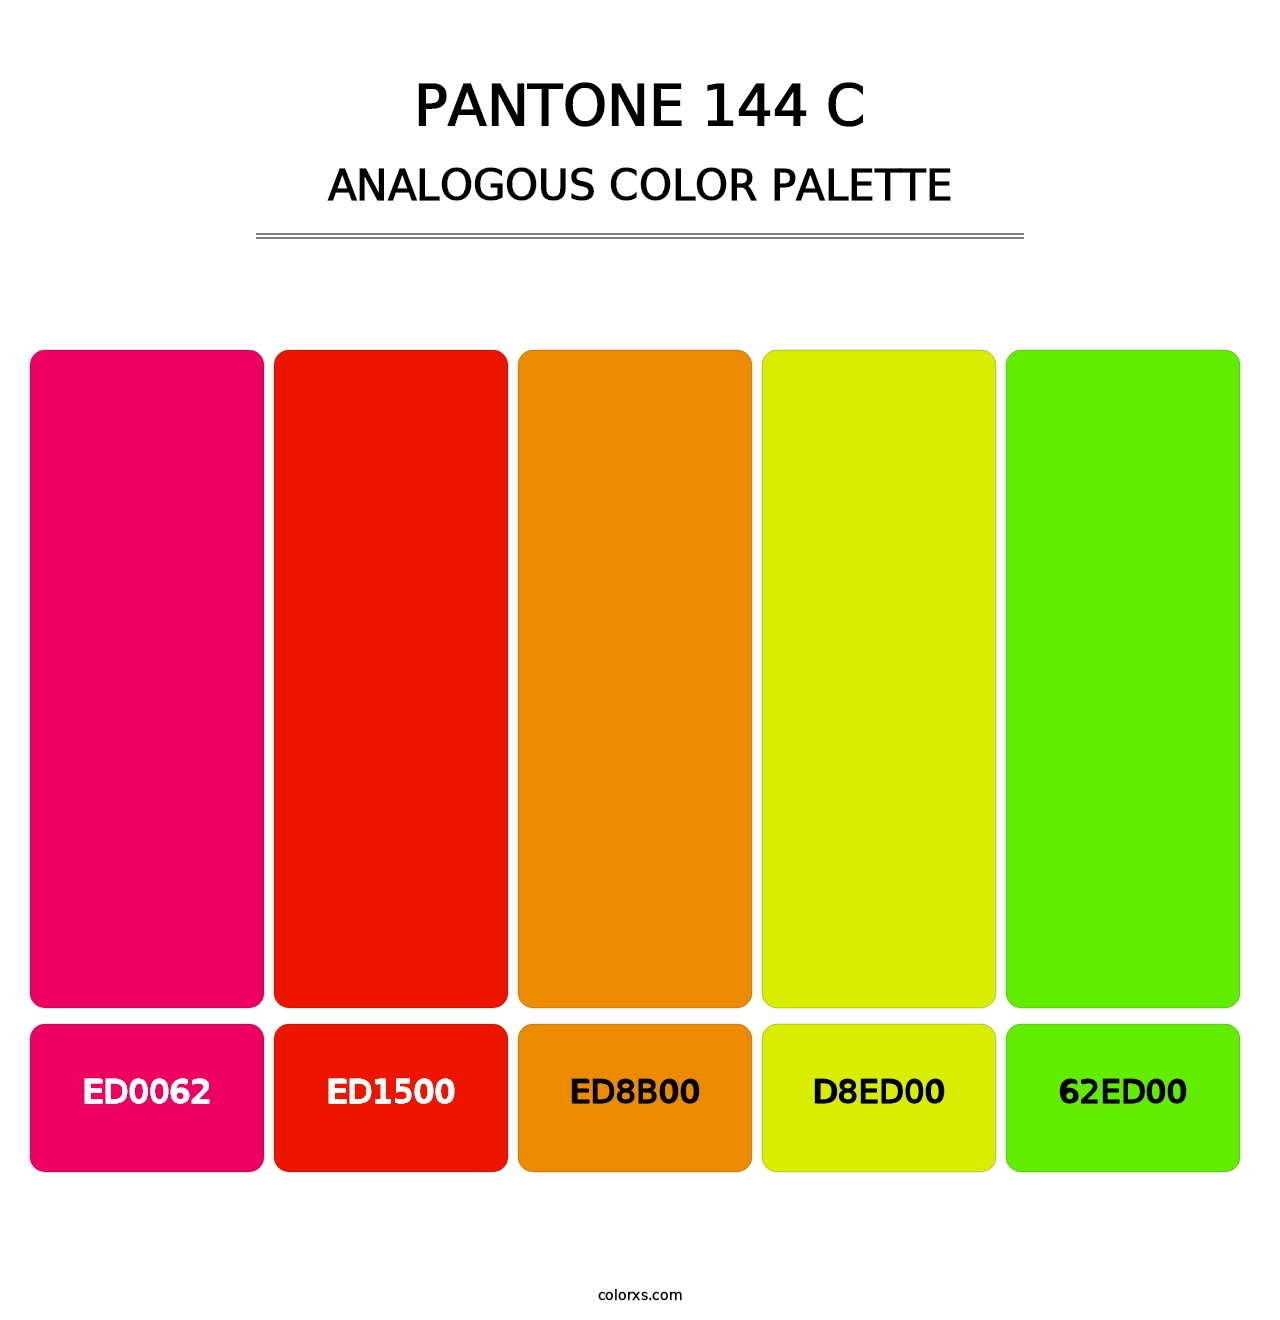 PANTONE 144 C - Analogous Color Palette